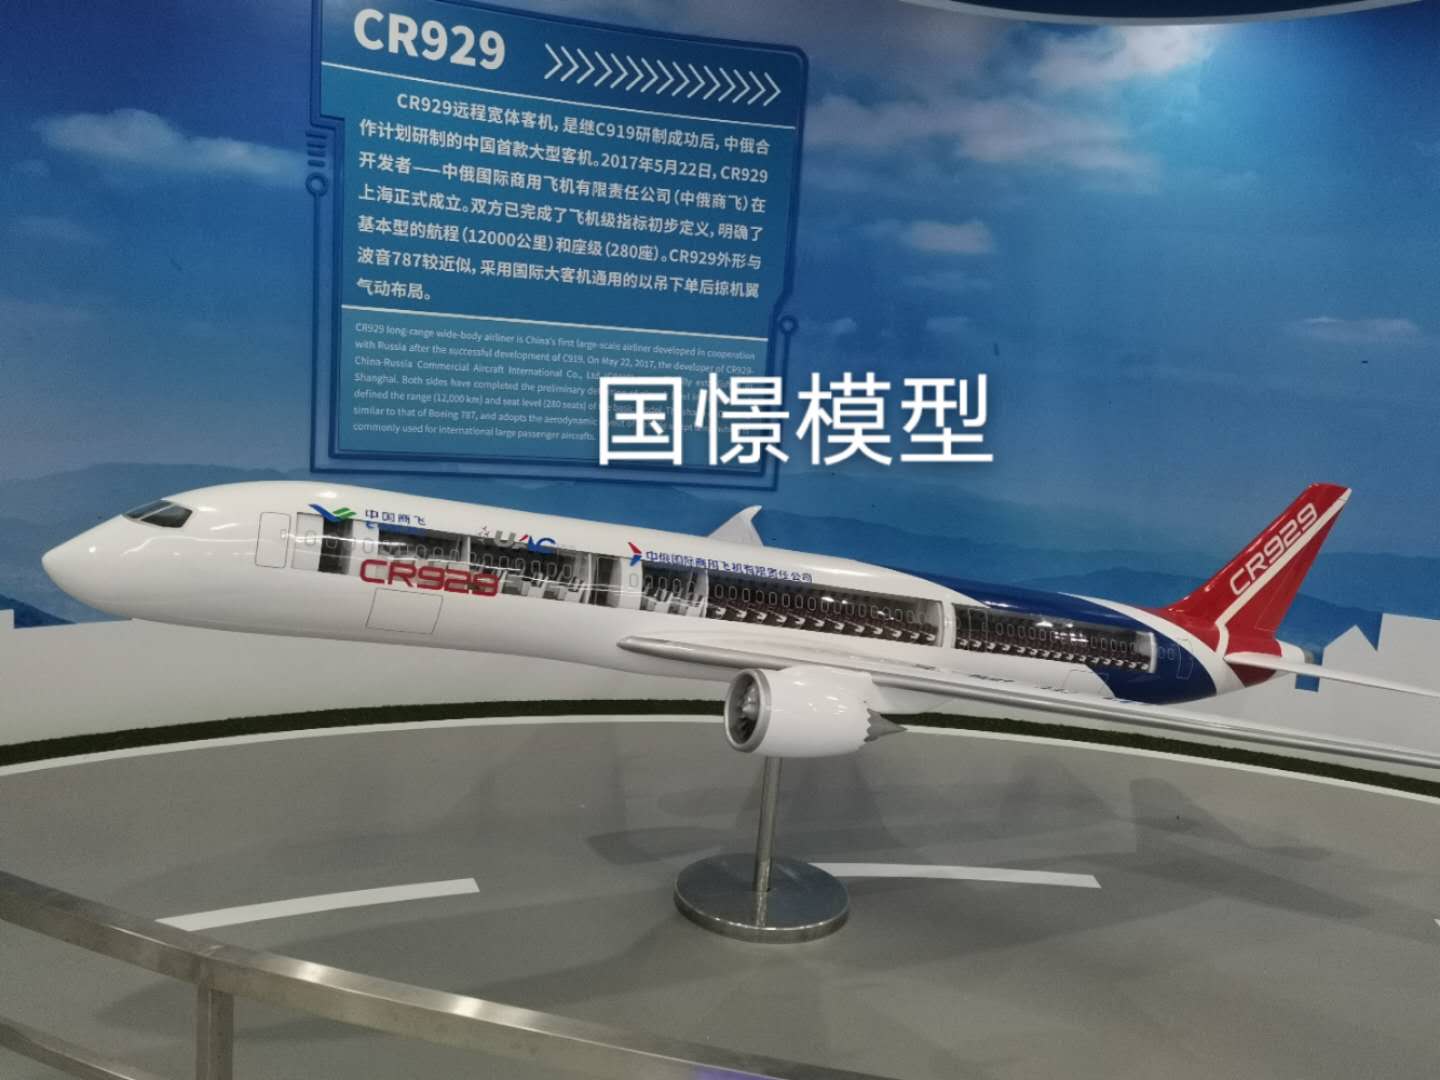 青浦区飞机模型